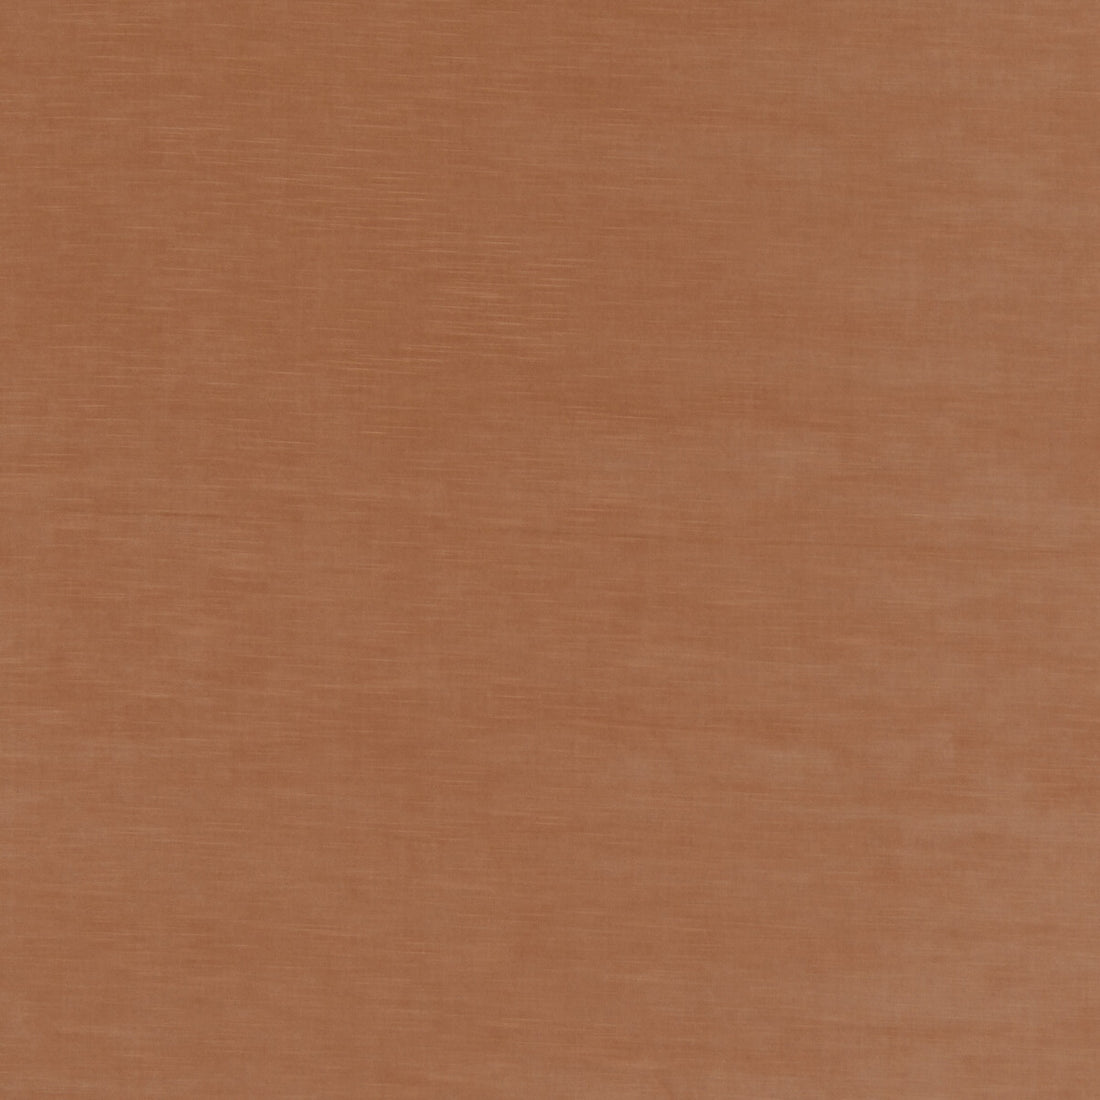 Quintessential Velvet fabric in dusk color - pattern ED85359.425.0 - by Threads in the Quintessential Velvet collection